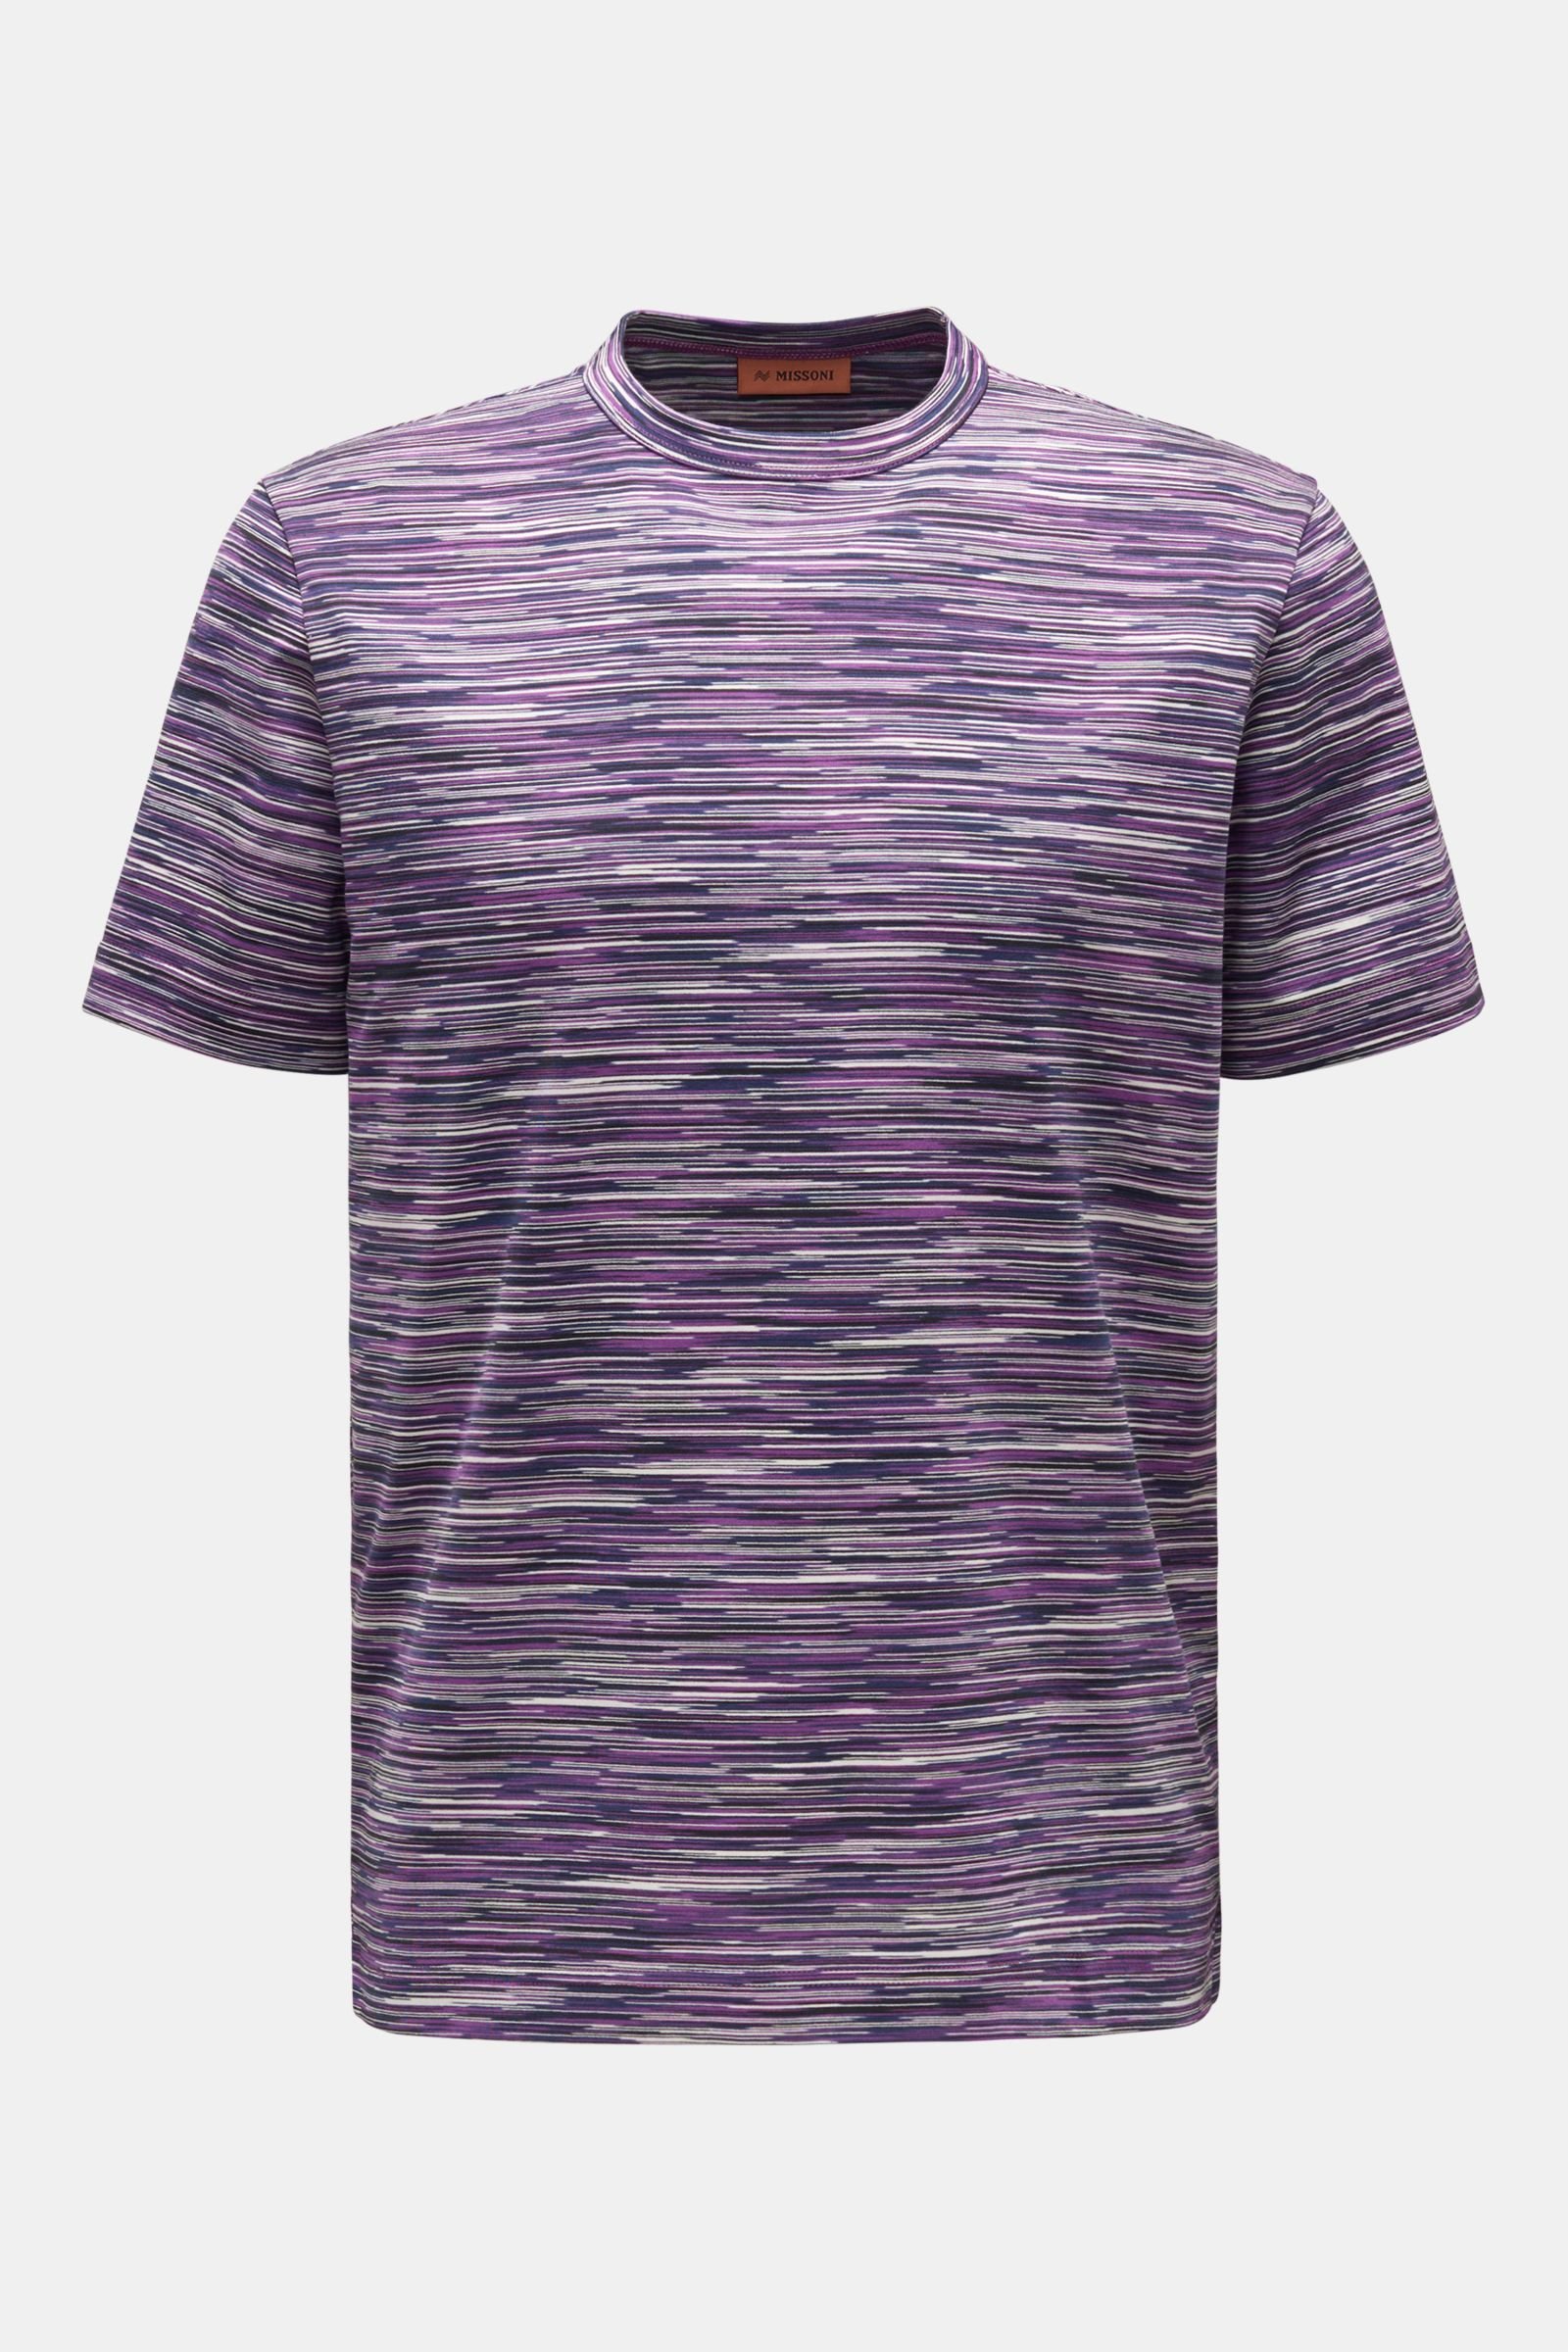 Rundhals-T-Shirt violett/navy/weiß gestreift